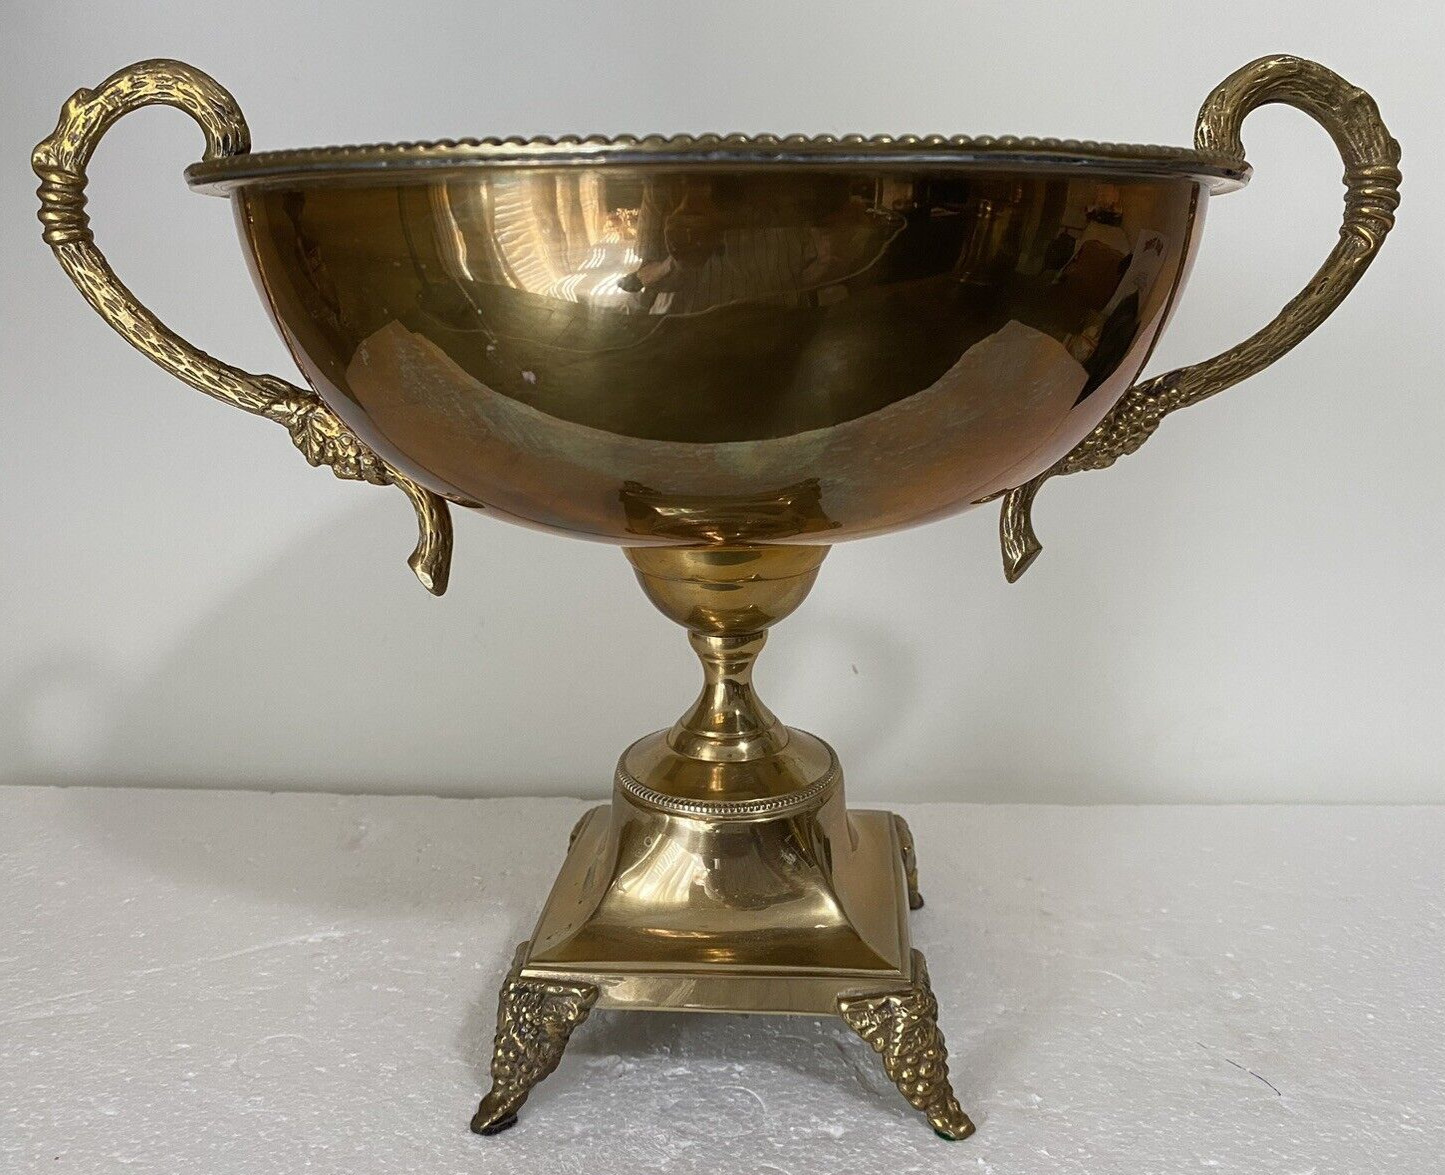 Vintage Brass Pedestal Bowl Ornate Handles Large Heavy Pedestal Base Footed